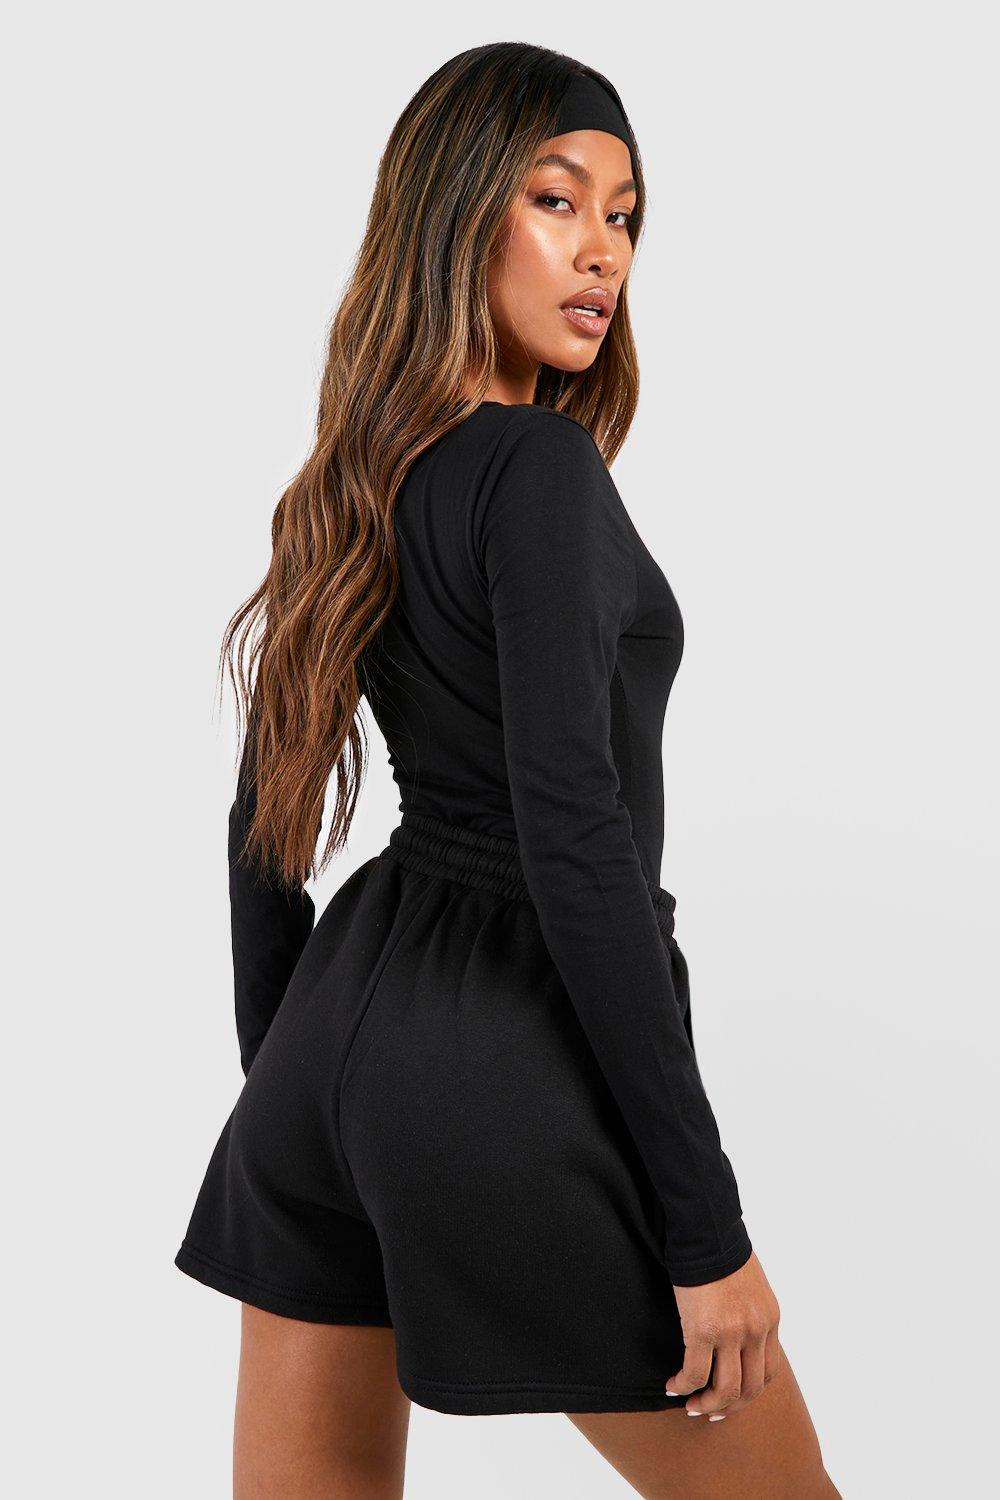 Women's Black Basic Long Sleeve Scoop Neck Bodysuit